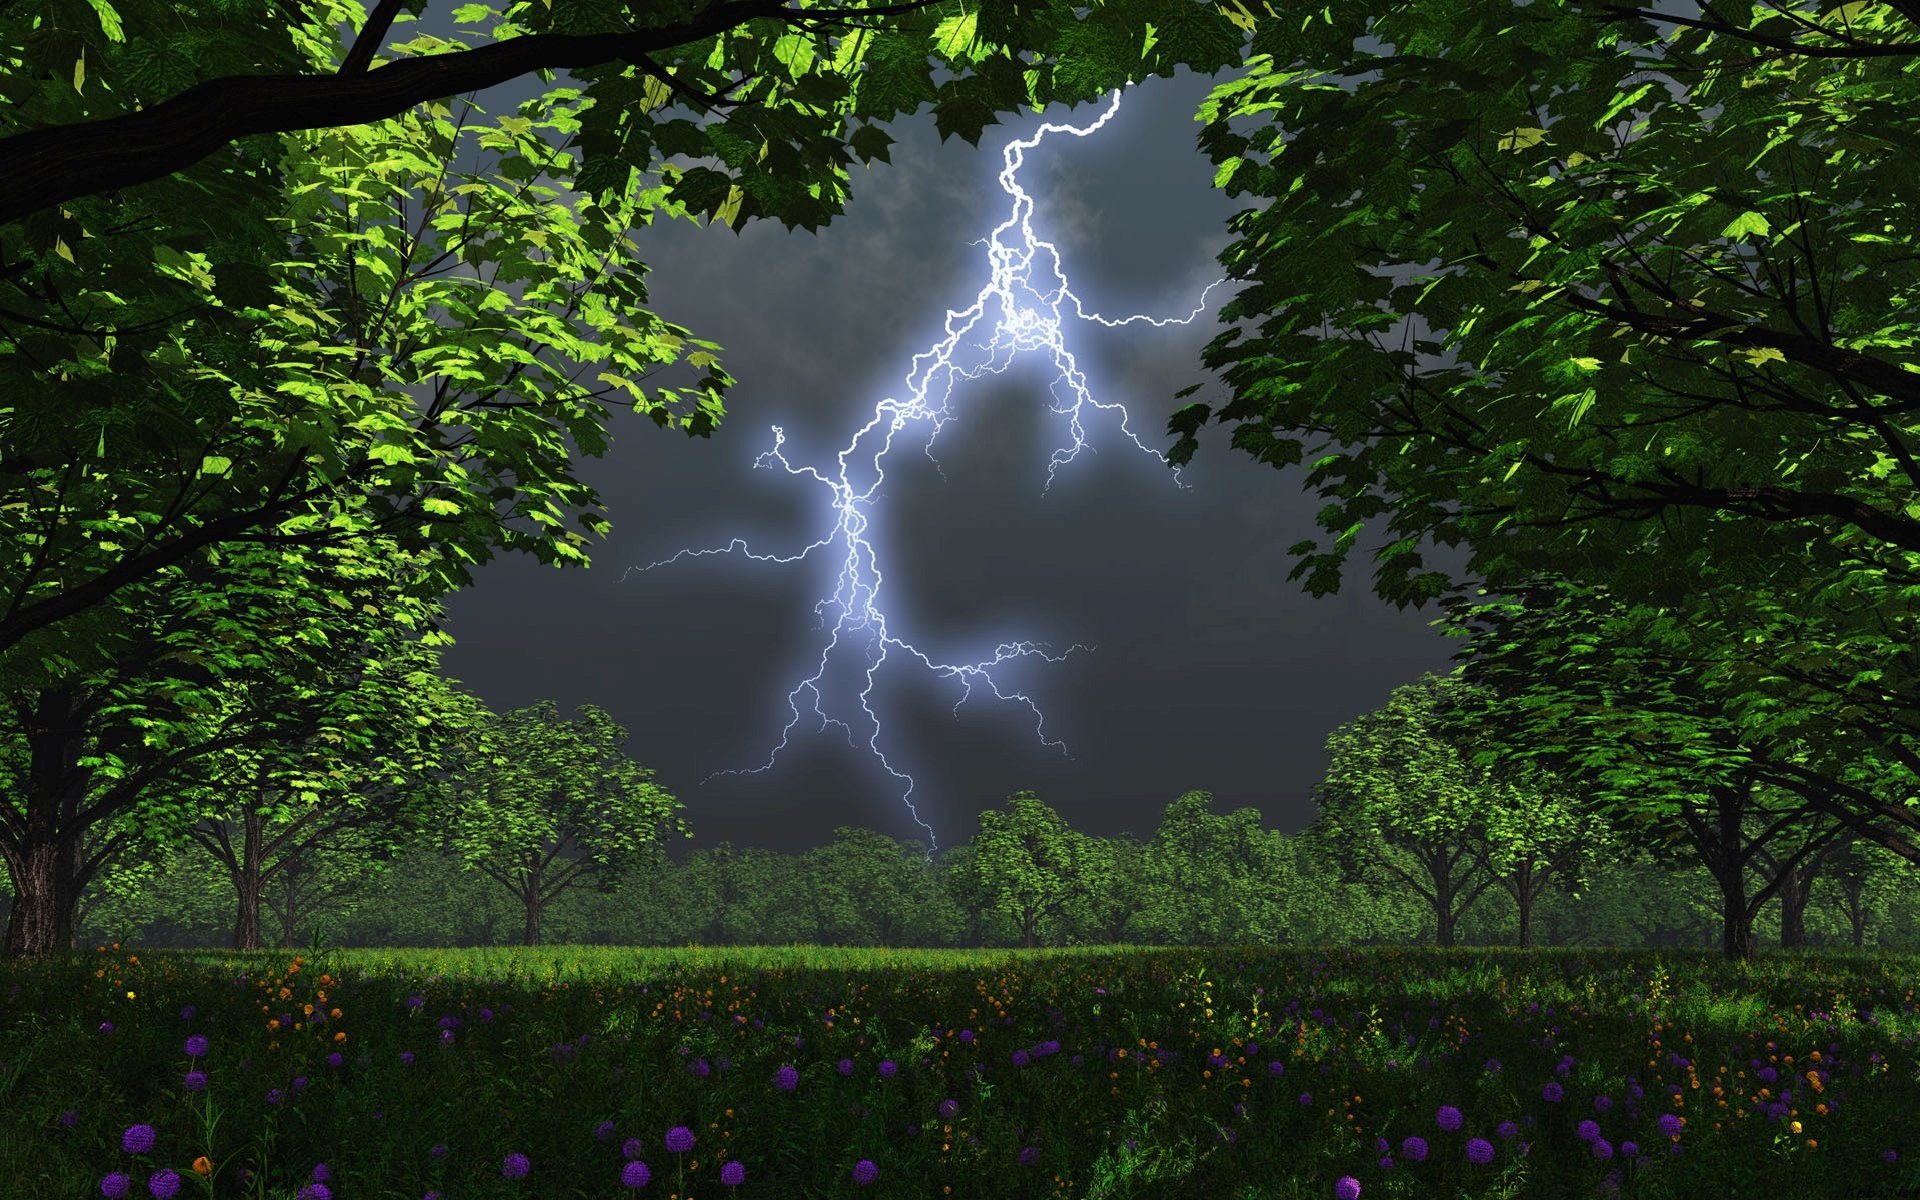 landscapes, nature, weather, lightning - desktop wallpaper